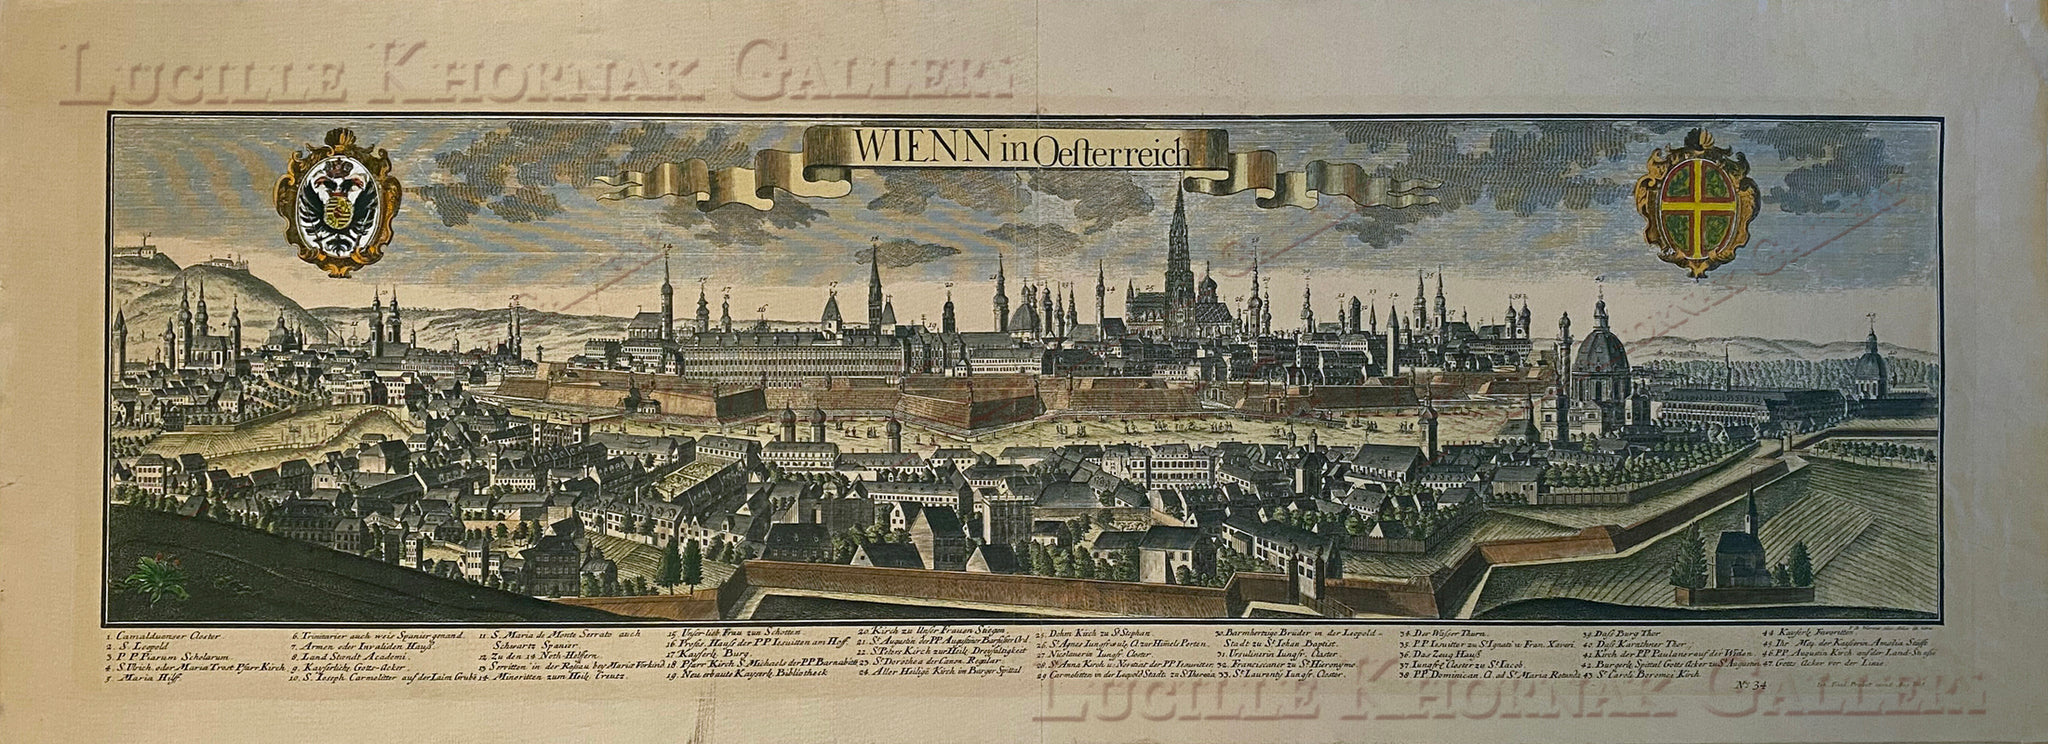 Wienn in Osterreich (Vienna, Austria) - Friedrich Bernhard Werner